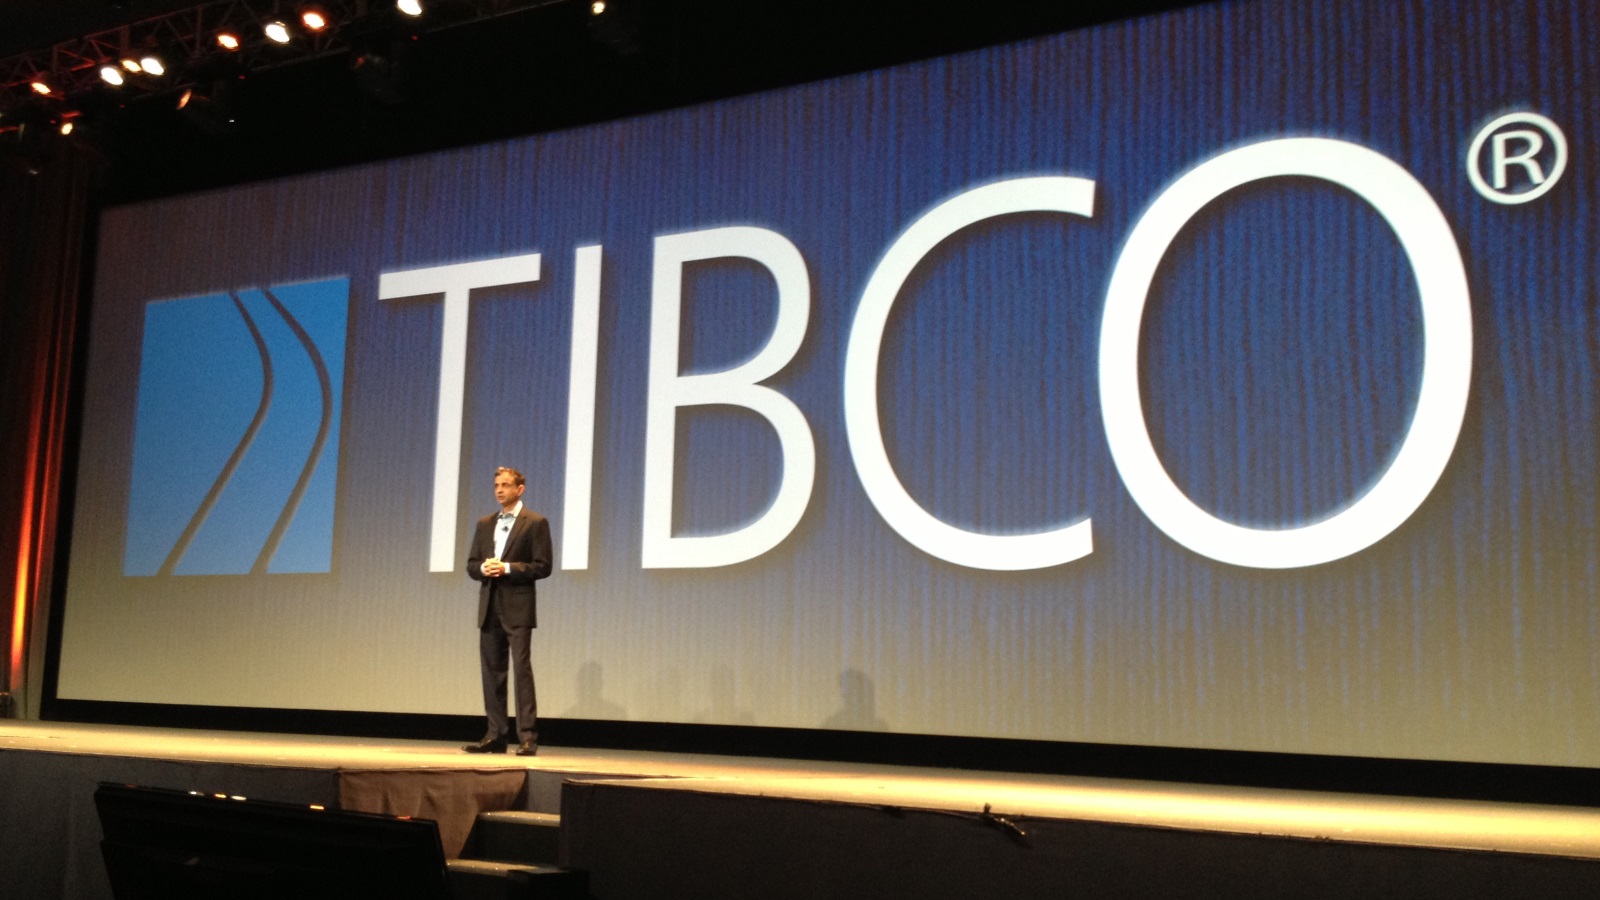 TIBCO founder and CEO Vivek Ranadivé